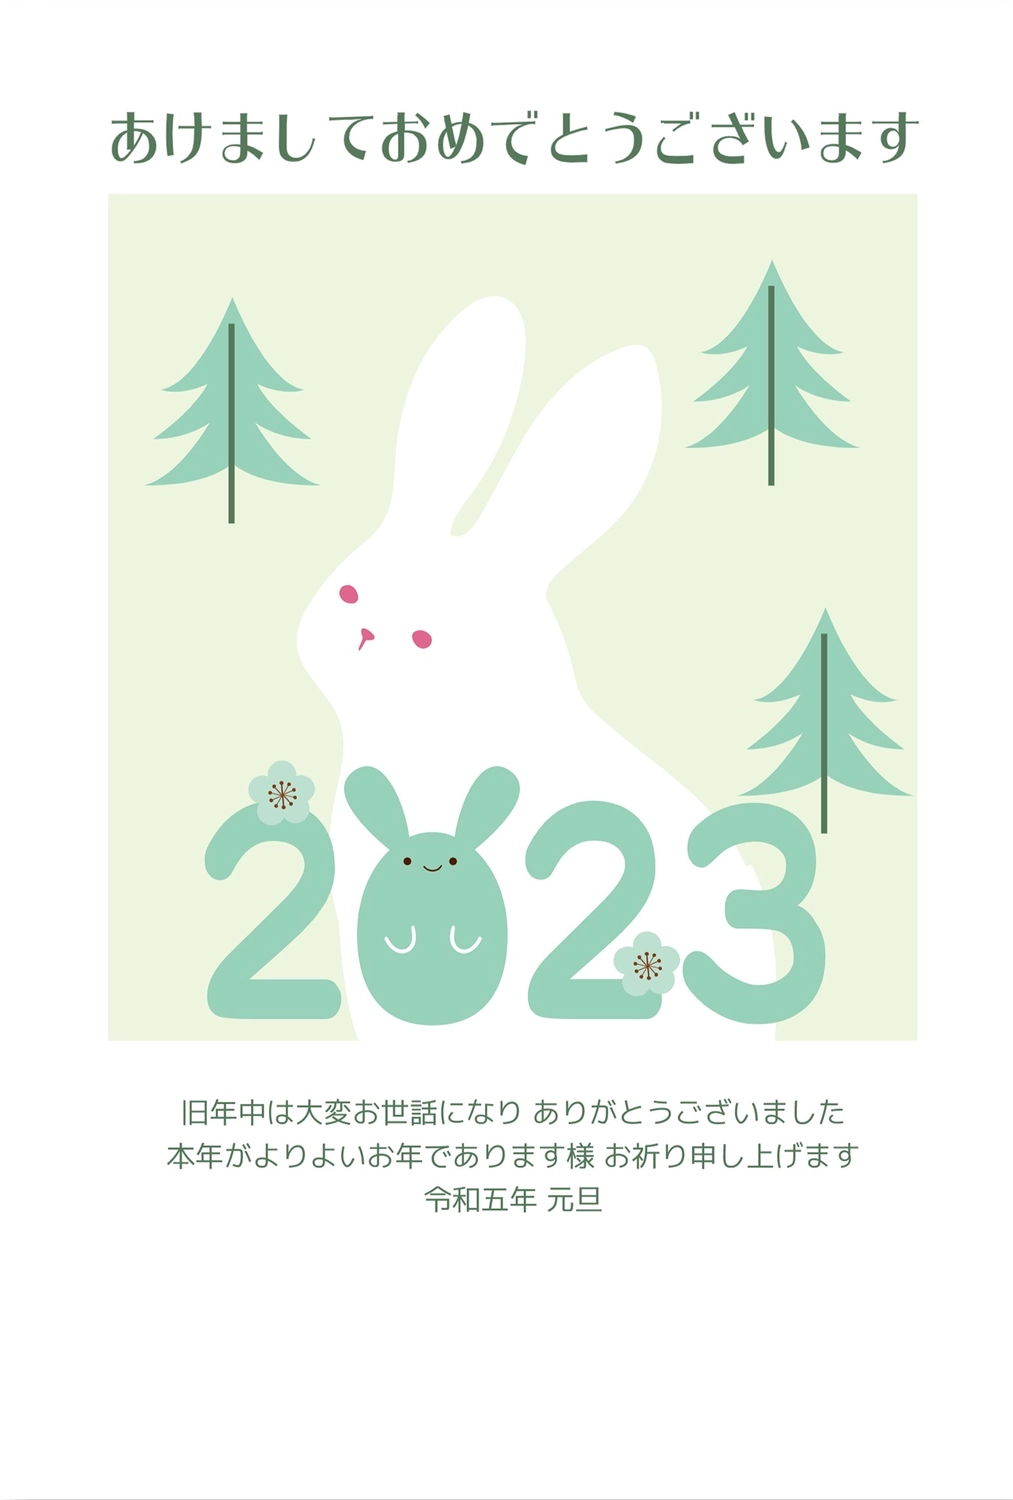 森の中の白うさぎ年賀状, NEW YEAR, concord, White rabbit, New Year Card template